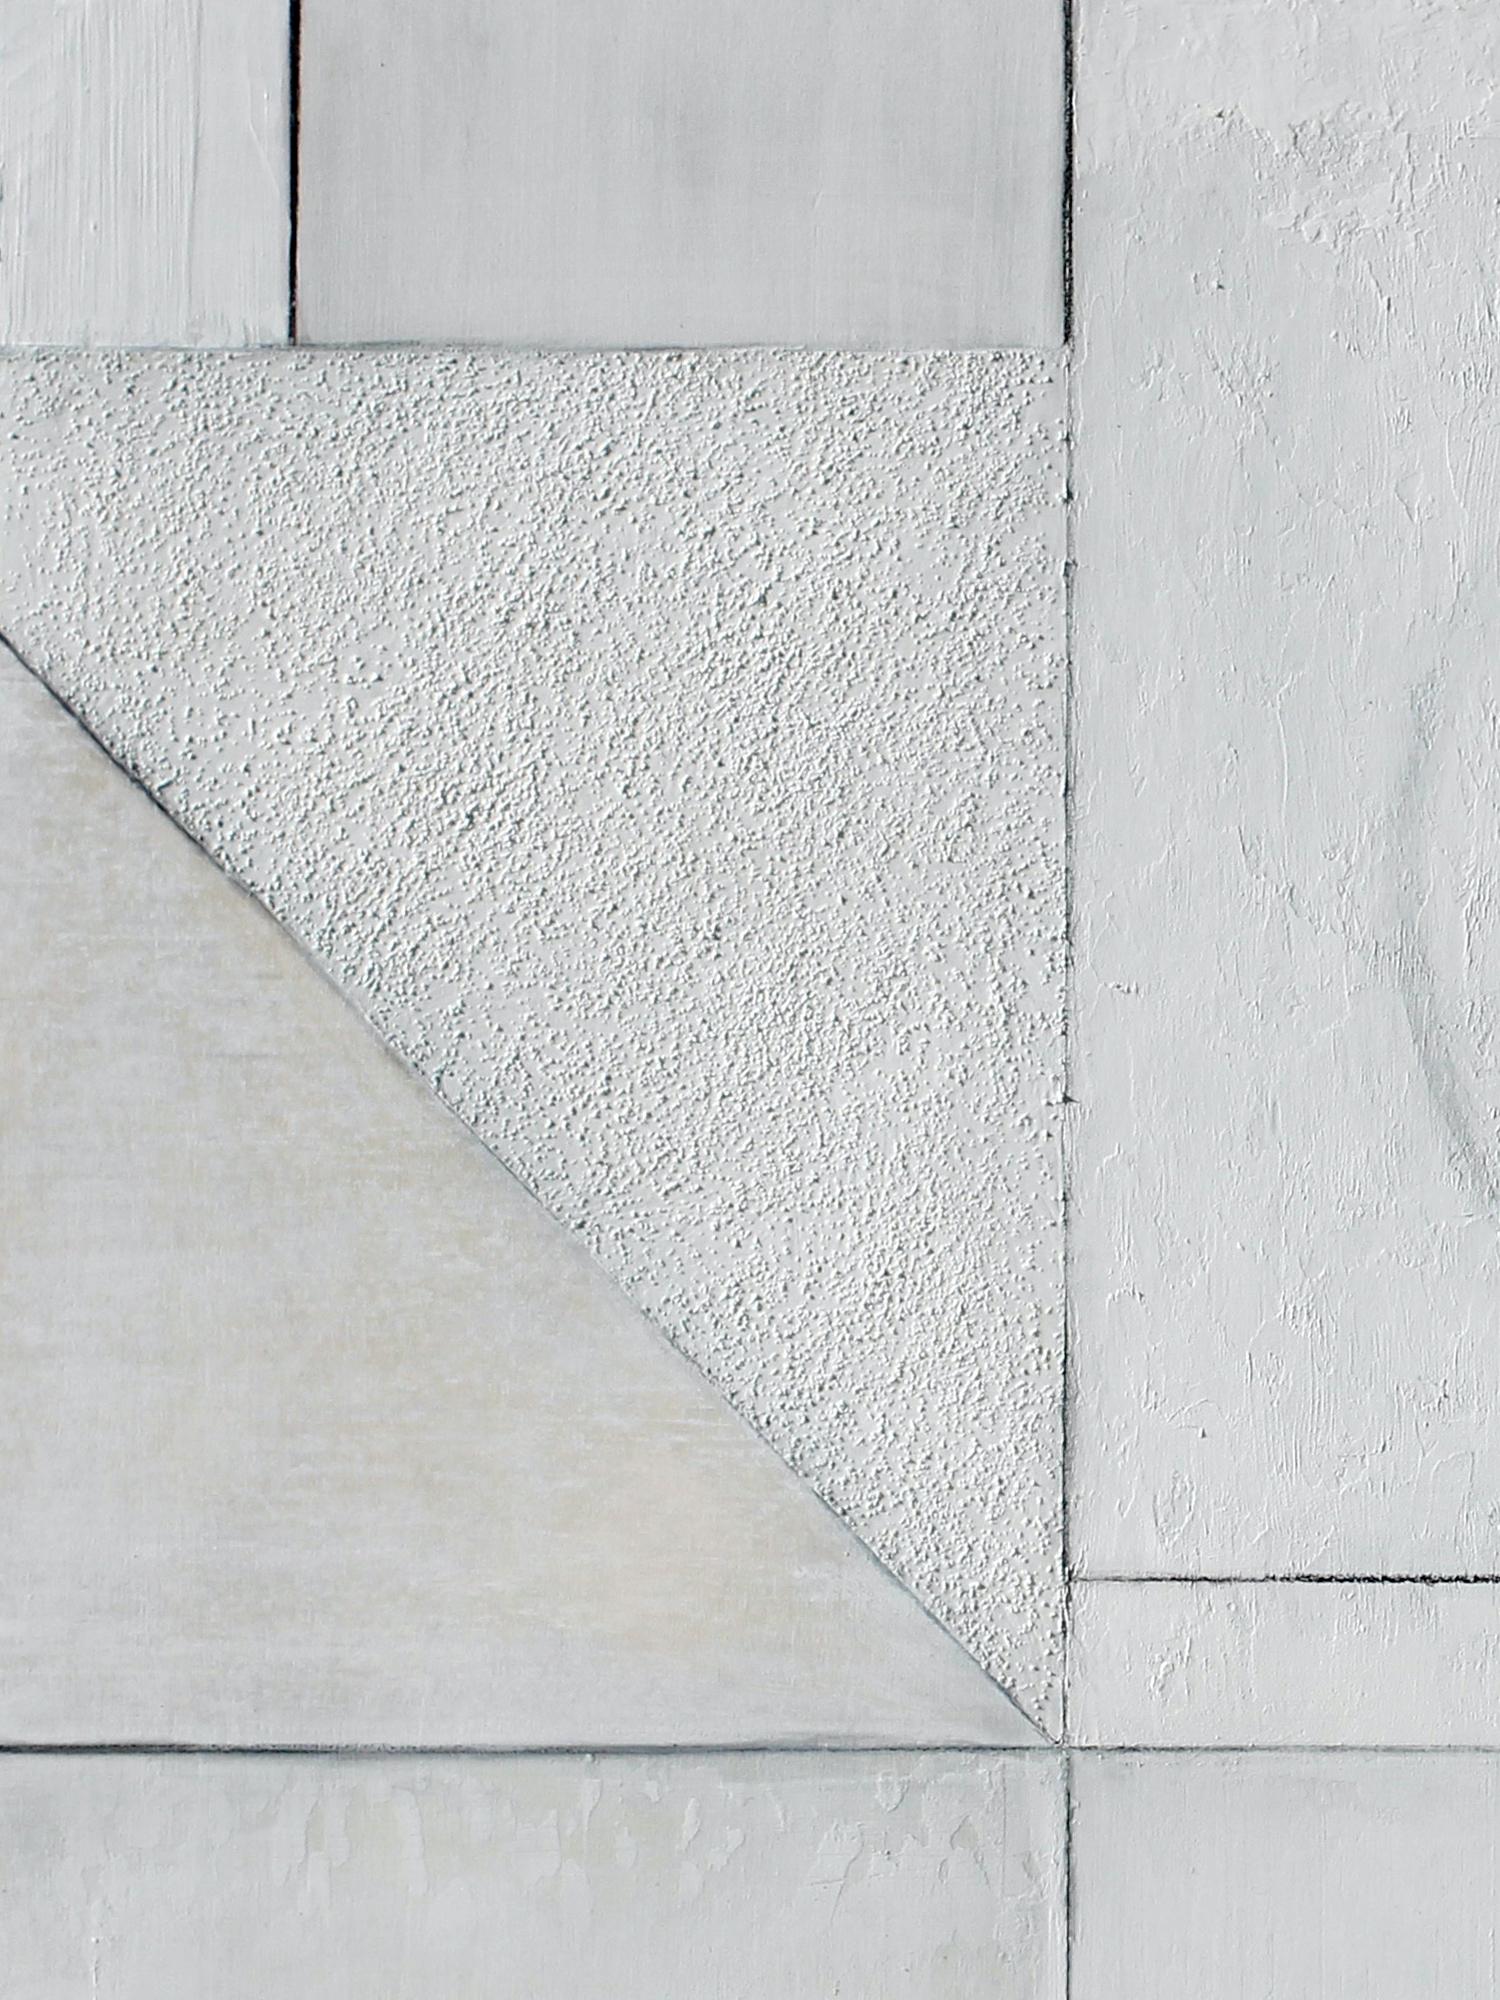 Cette pièce représente une composition abstraite avec l'utilisation de médias mixtes et de motifs audacieux produisant une œuvre visuellement texturée et riche en couches, alors qu'Owen crée une composition géométrique complexe et minimaliste. Même